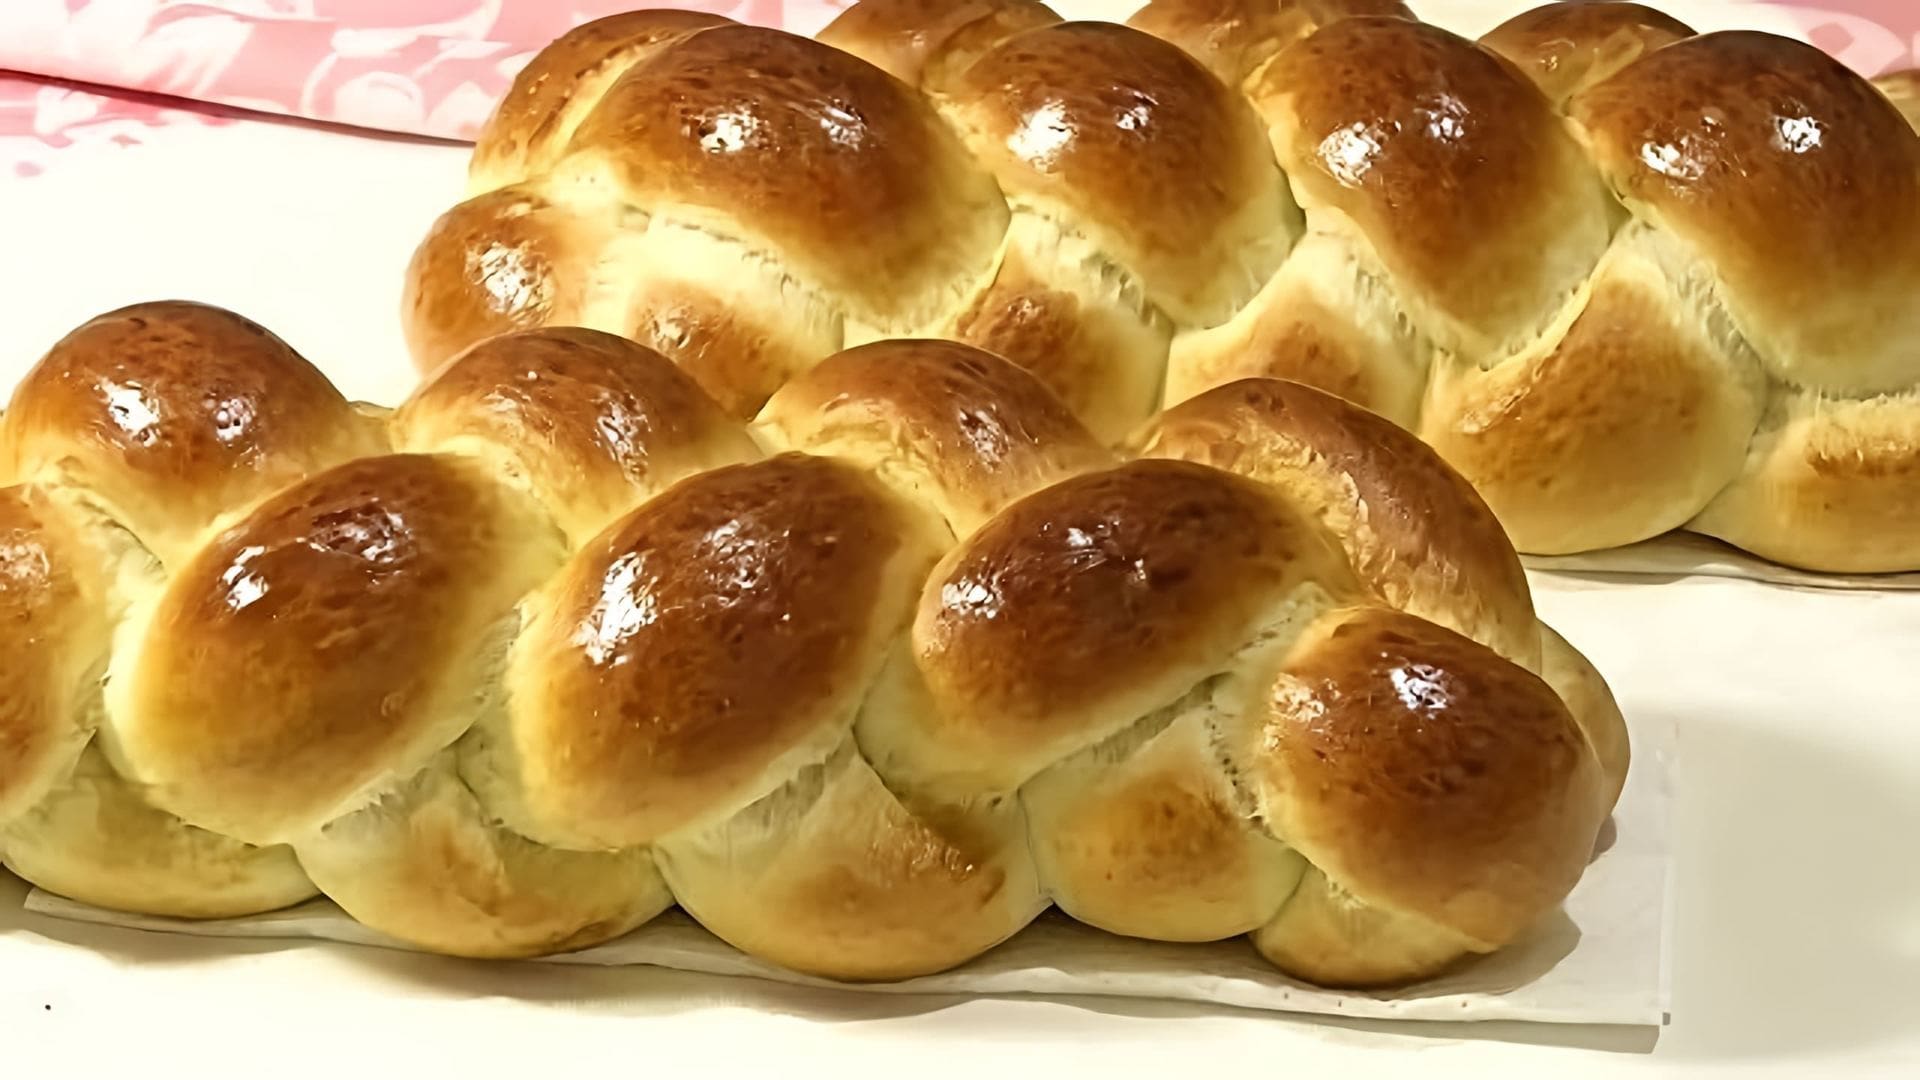 В этом видео демонстрируется процесс приготовления халы, традиционного еврейского хлеба